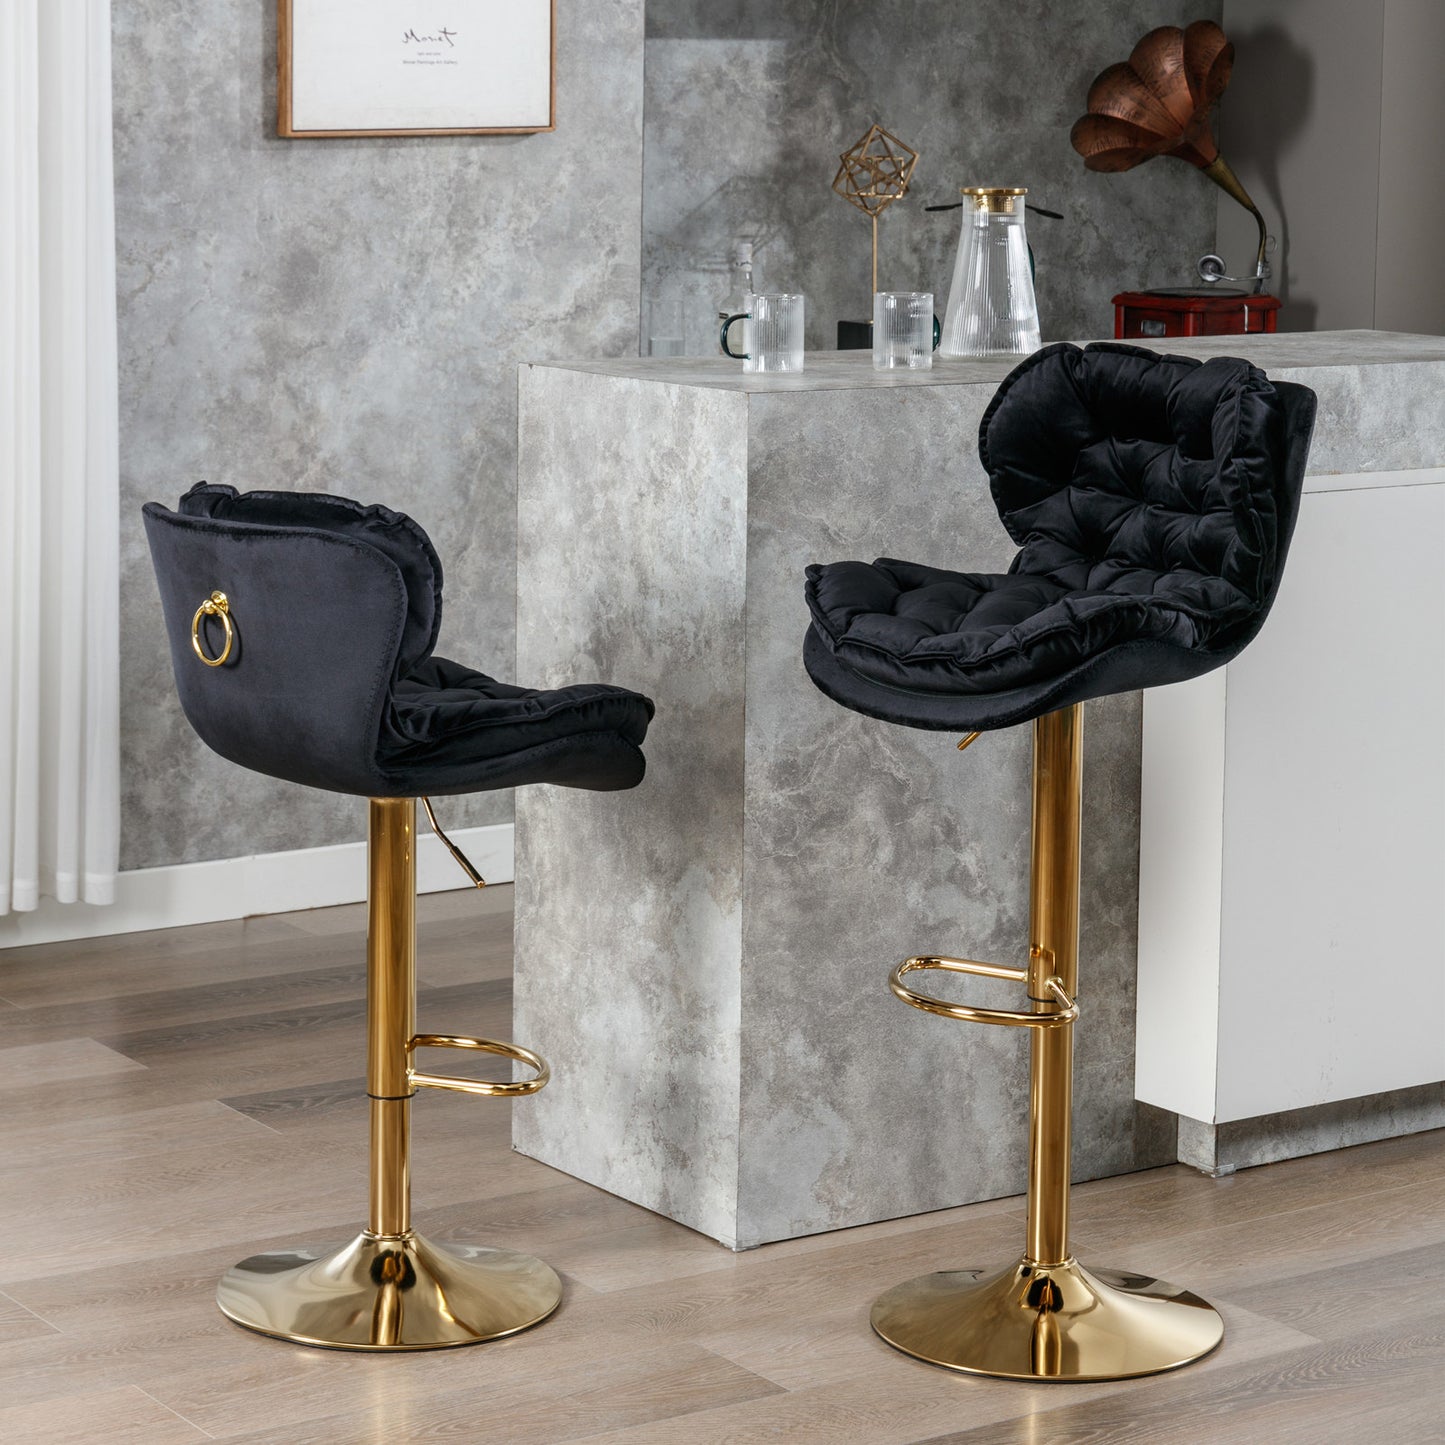 swivel bar stools set of 2, velvet black